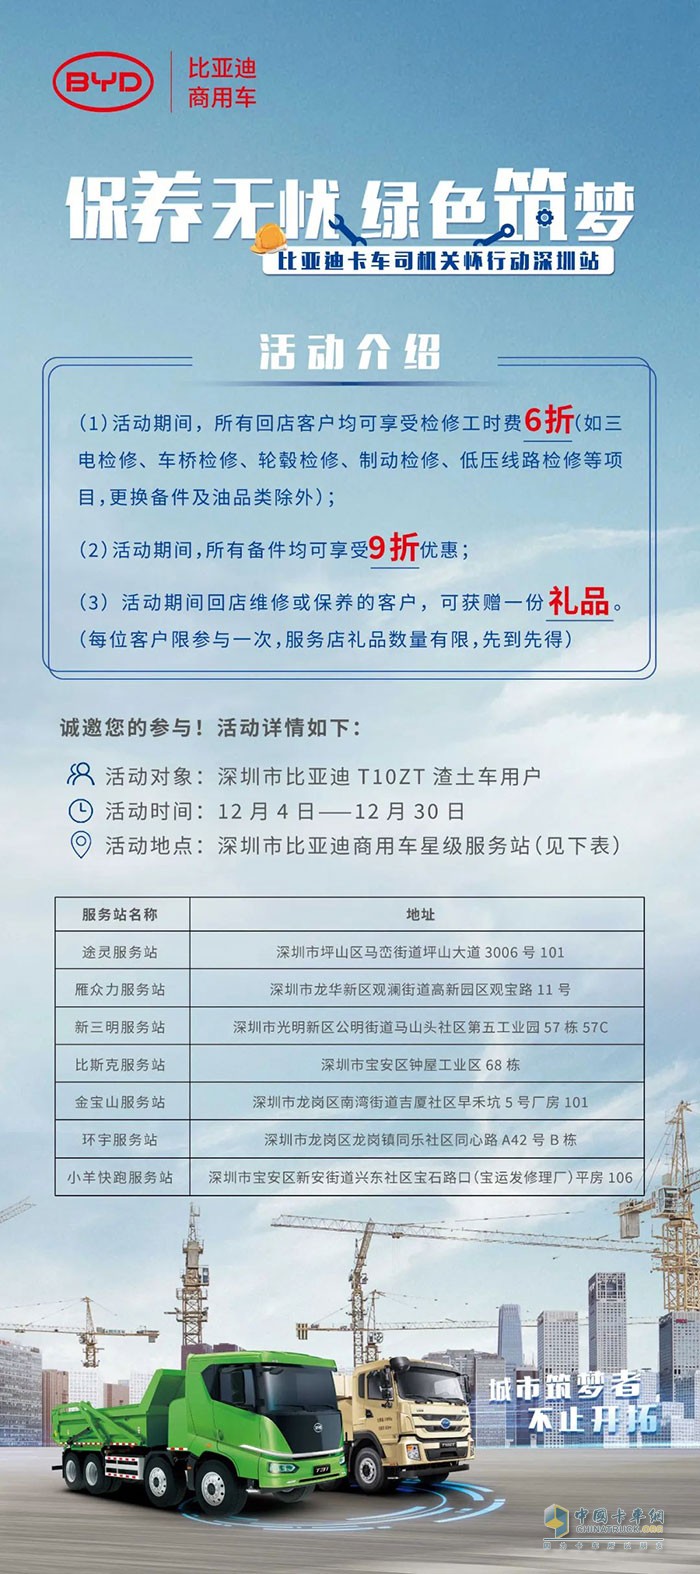 活动内容及深圳服务站点分布